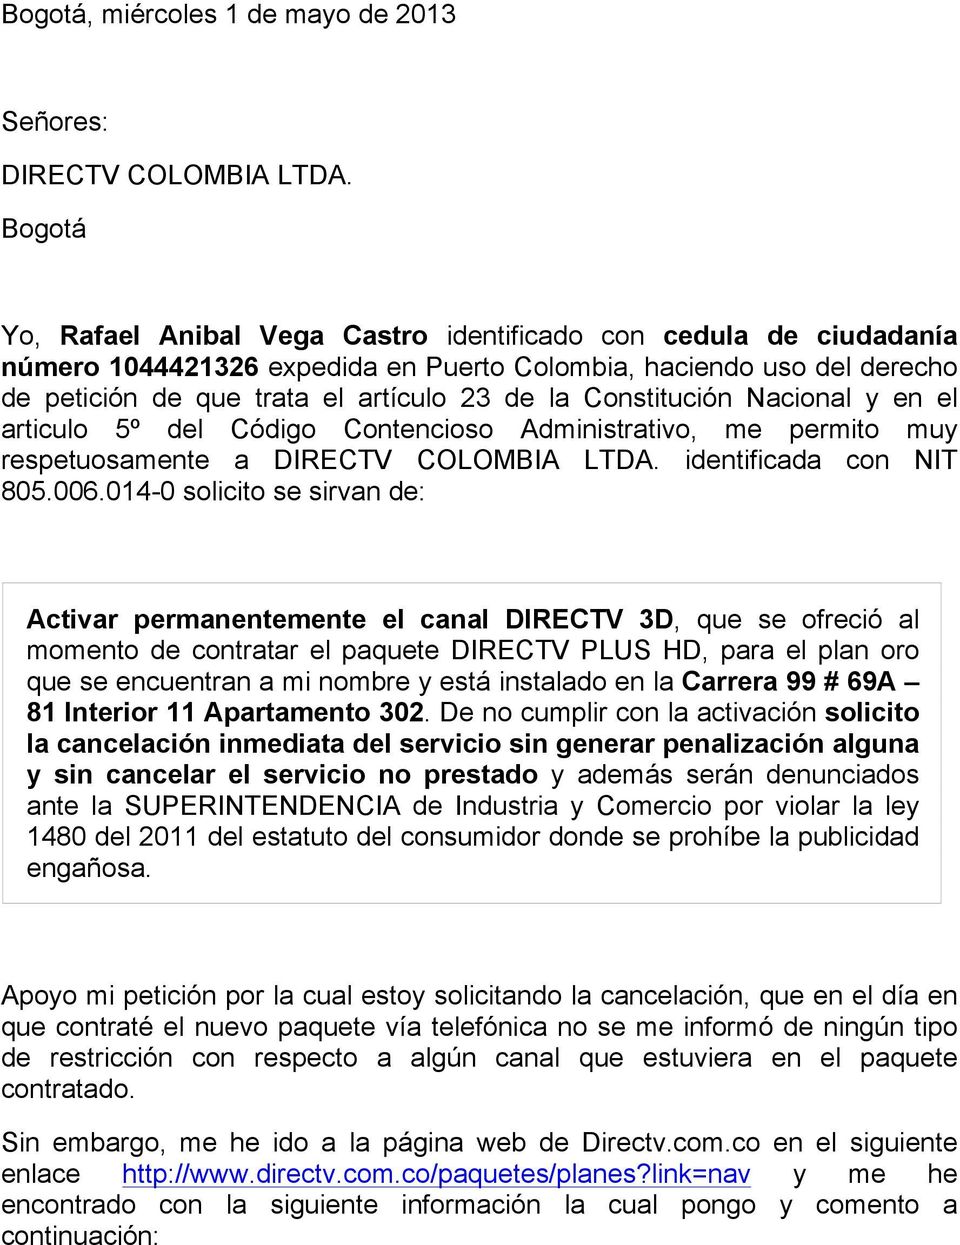 Constitución Nacional y en el articulo 5º del Código Contencioso Administrativo, me permito muy respetuosamente a DIRECTV COLOMBIA LTDA. identificada con NIT 805.006.